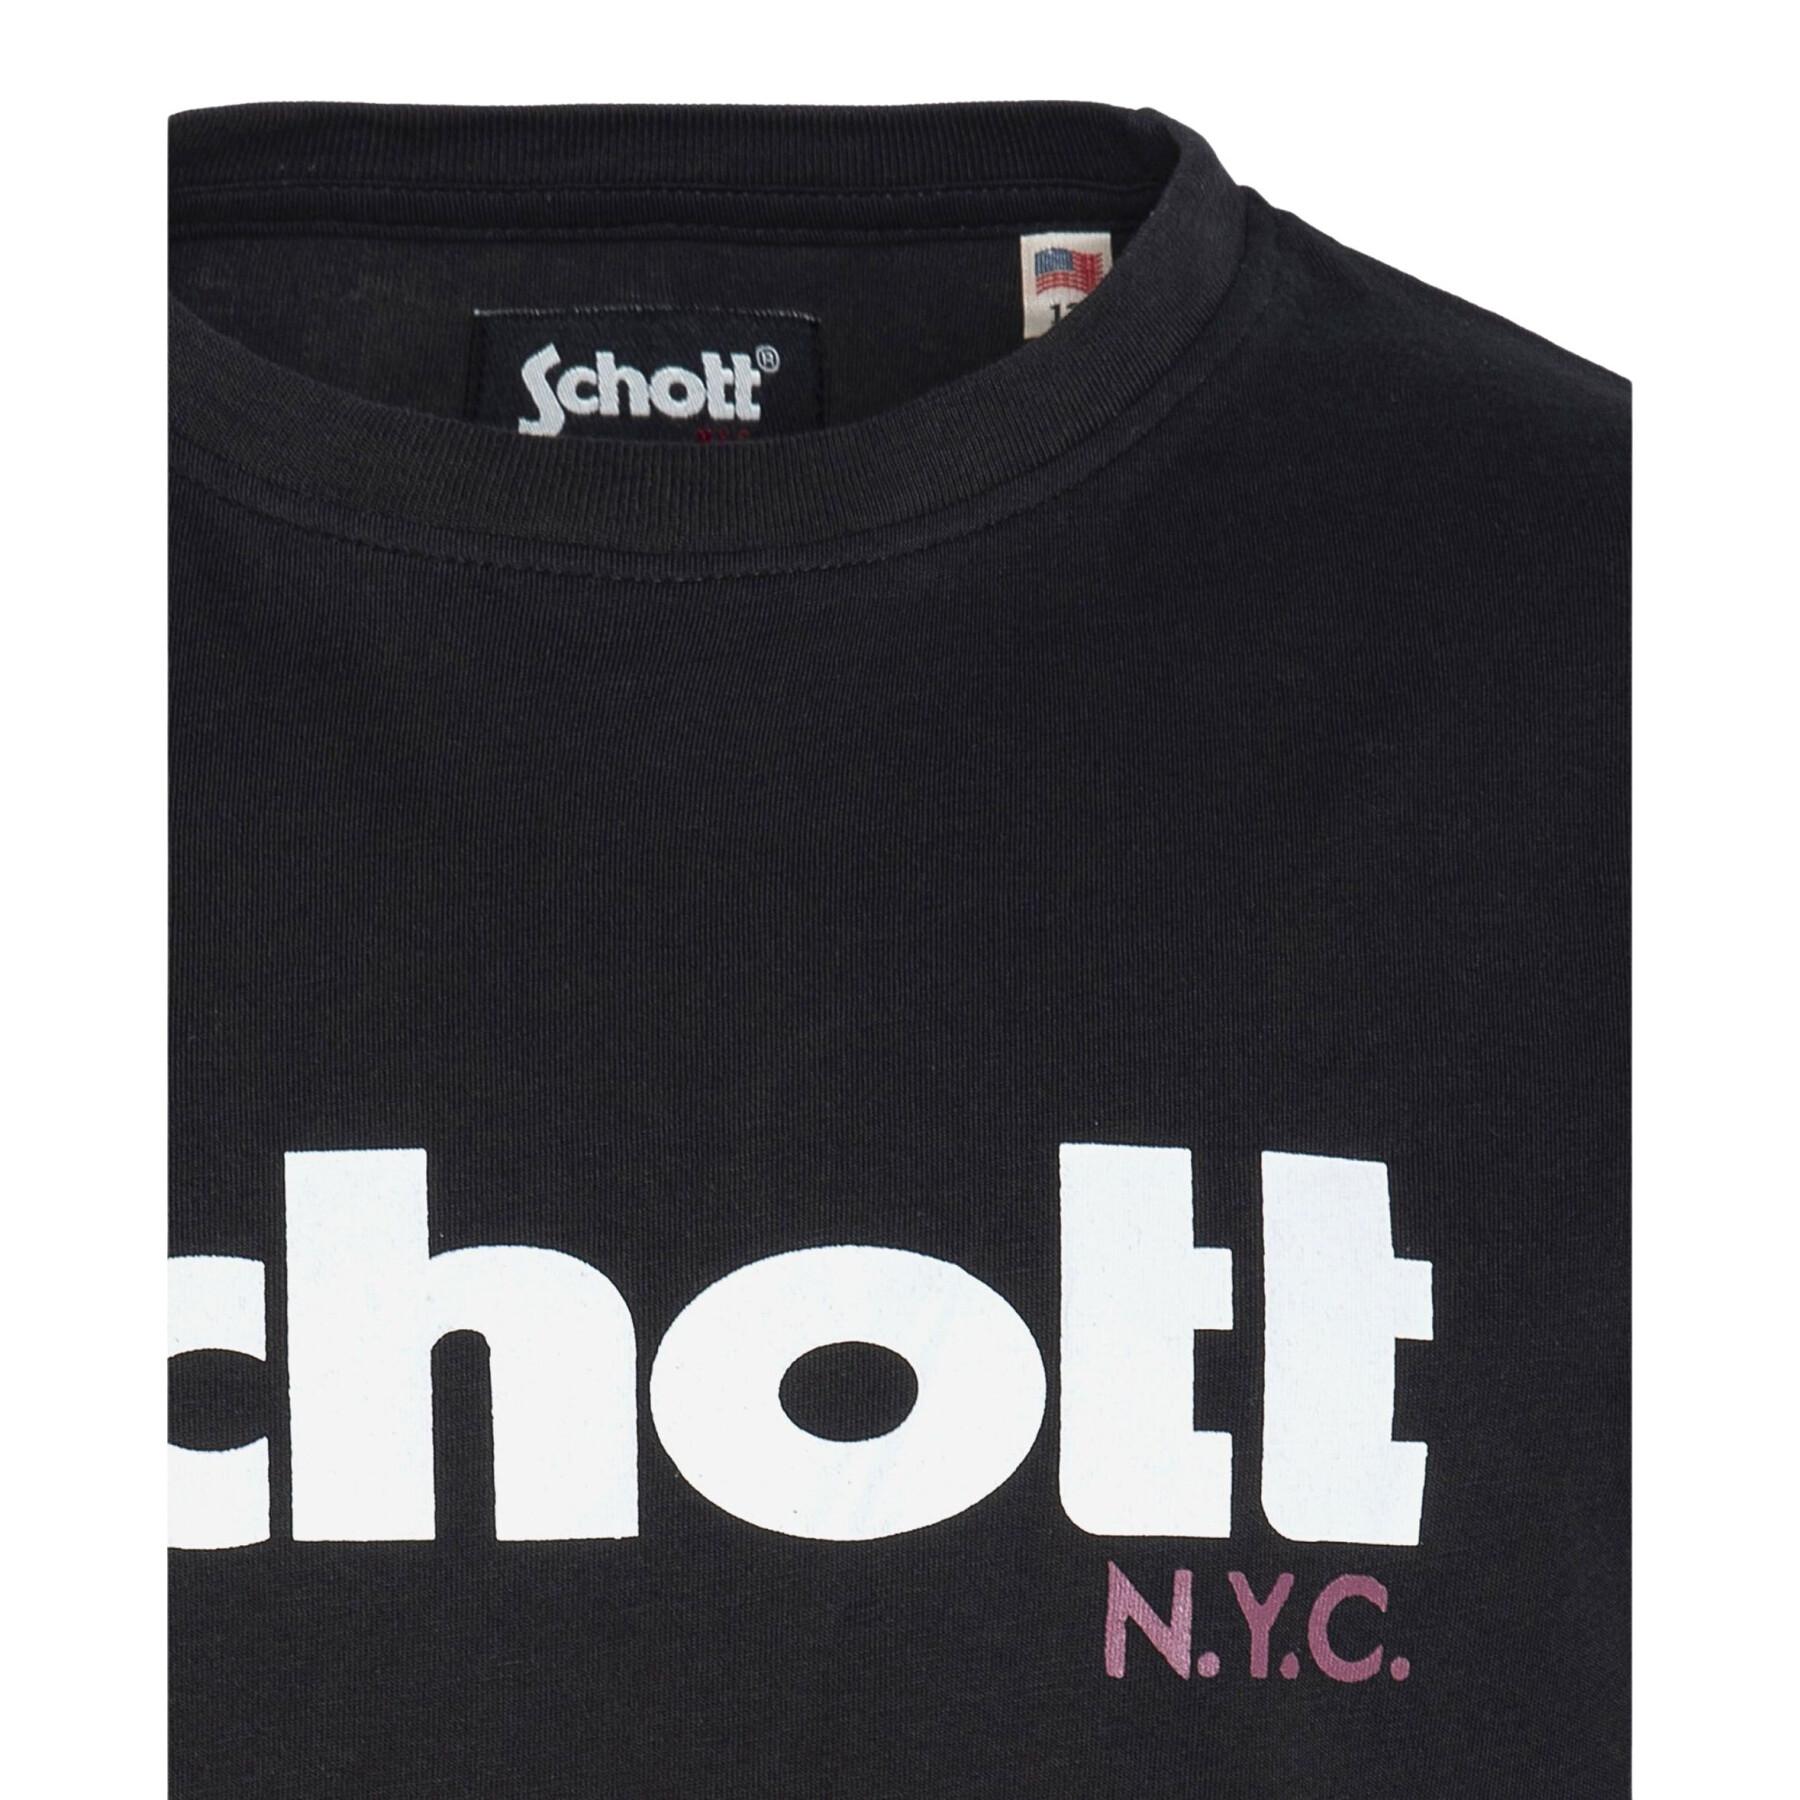 T-Shirt Logo Kind Schott